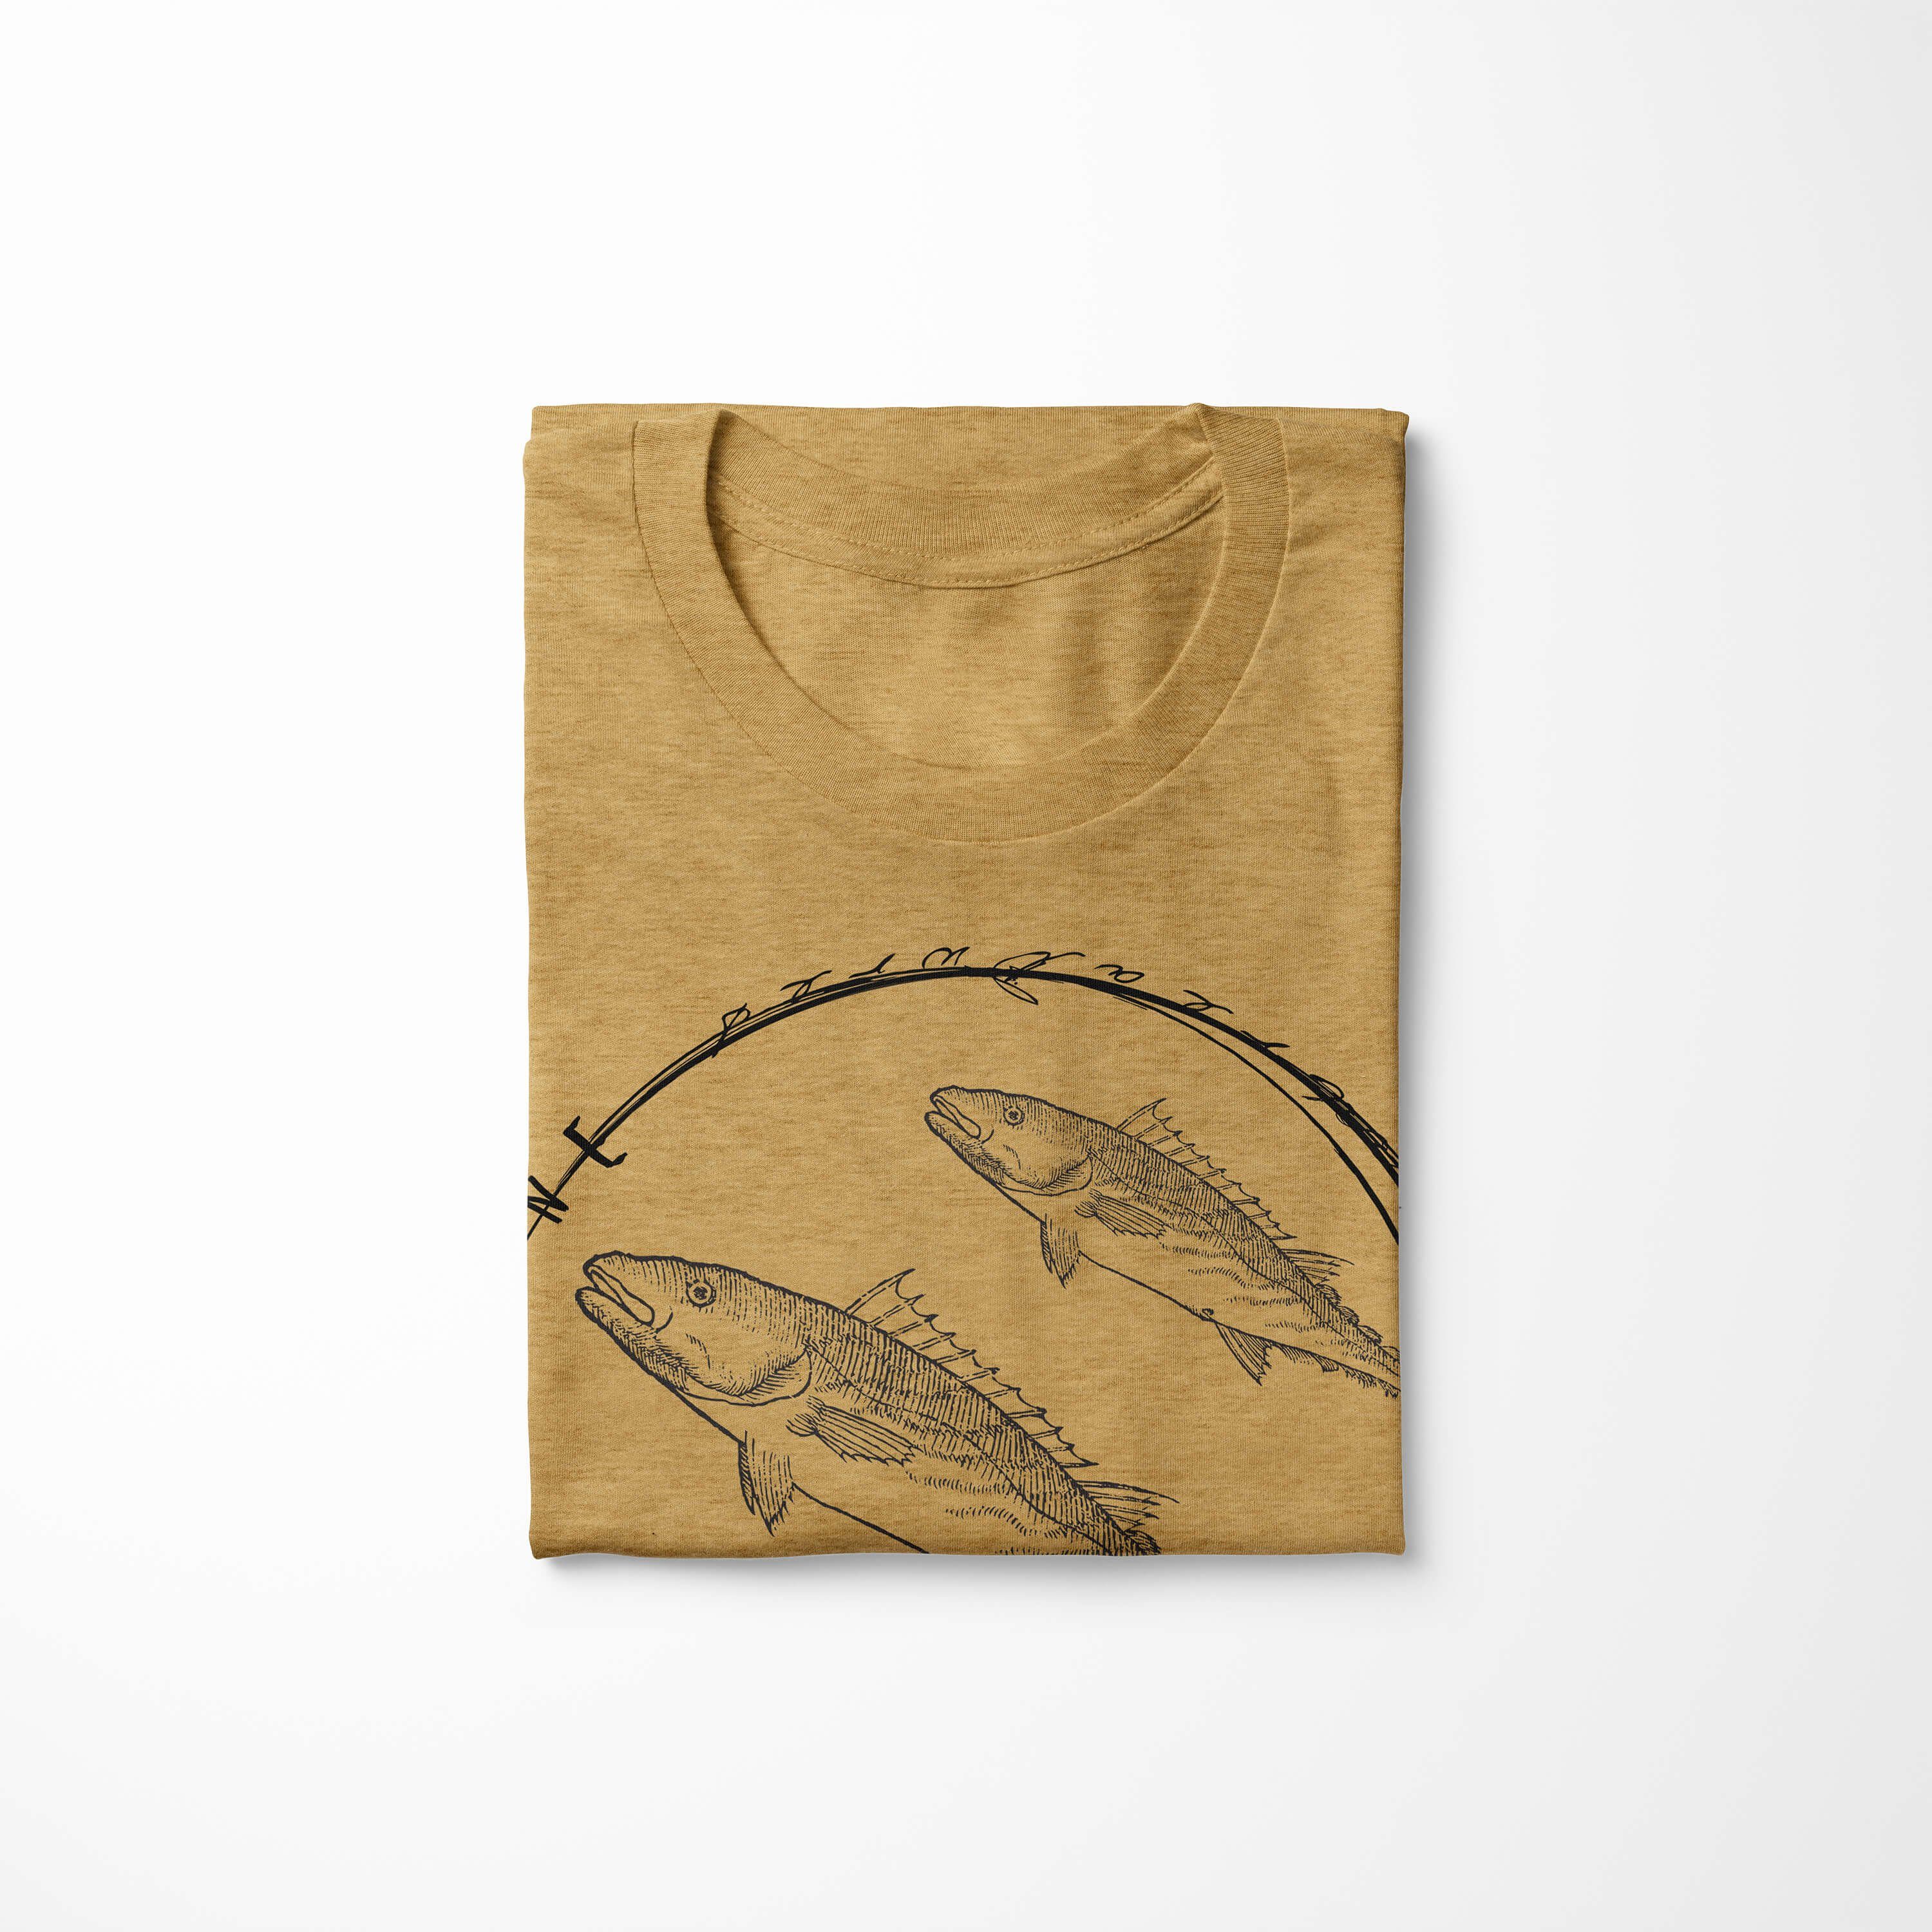 Struktur Tiefsee - Gold und Art Sea T-Shirt Serie: / sportlicher Sea Creatures, 094 Sinus T-Shirt feine Schnitt Fische Antique